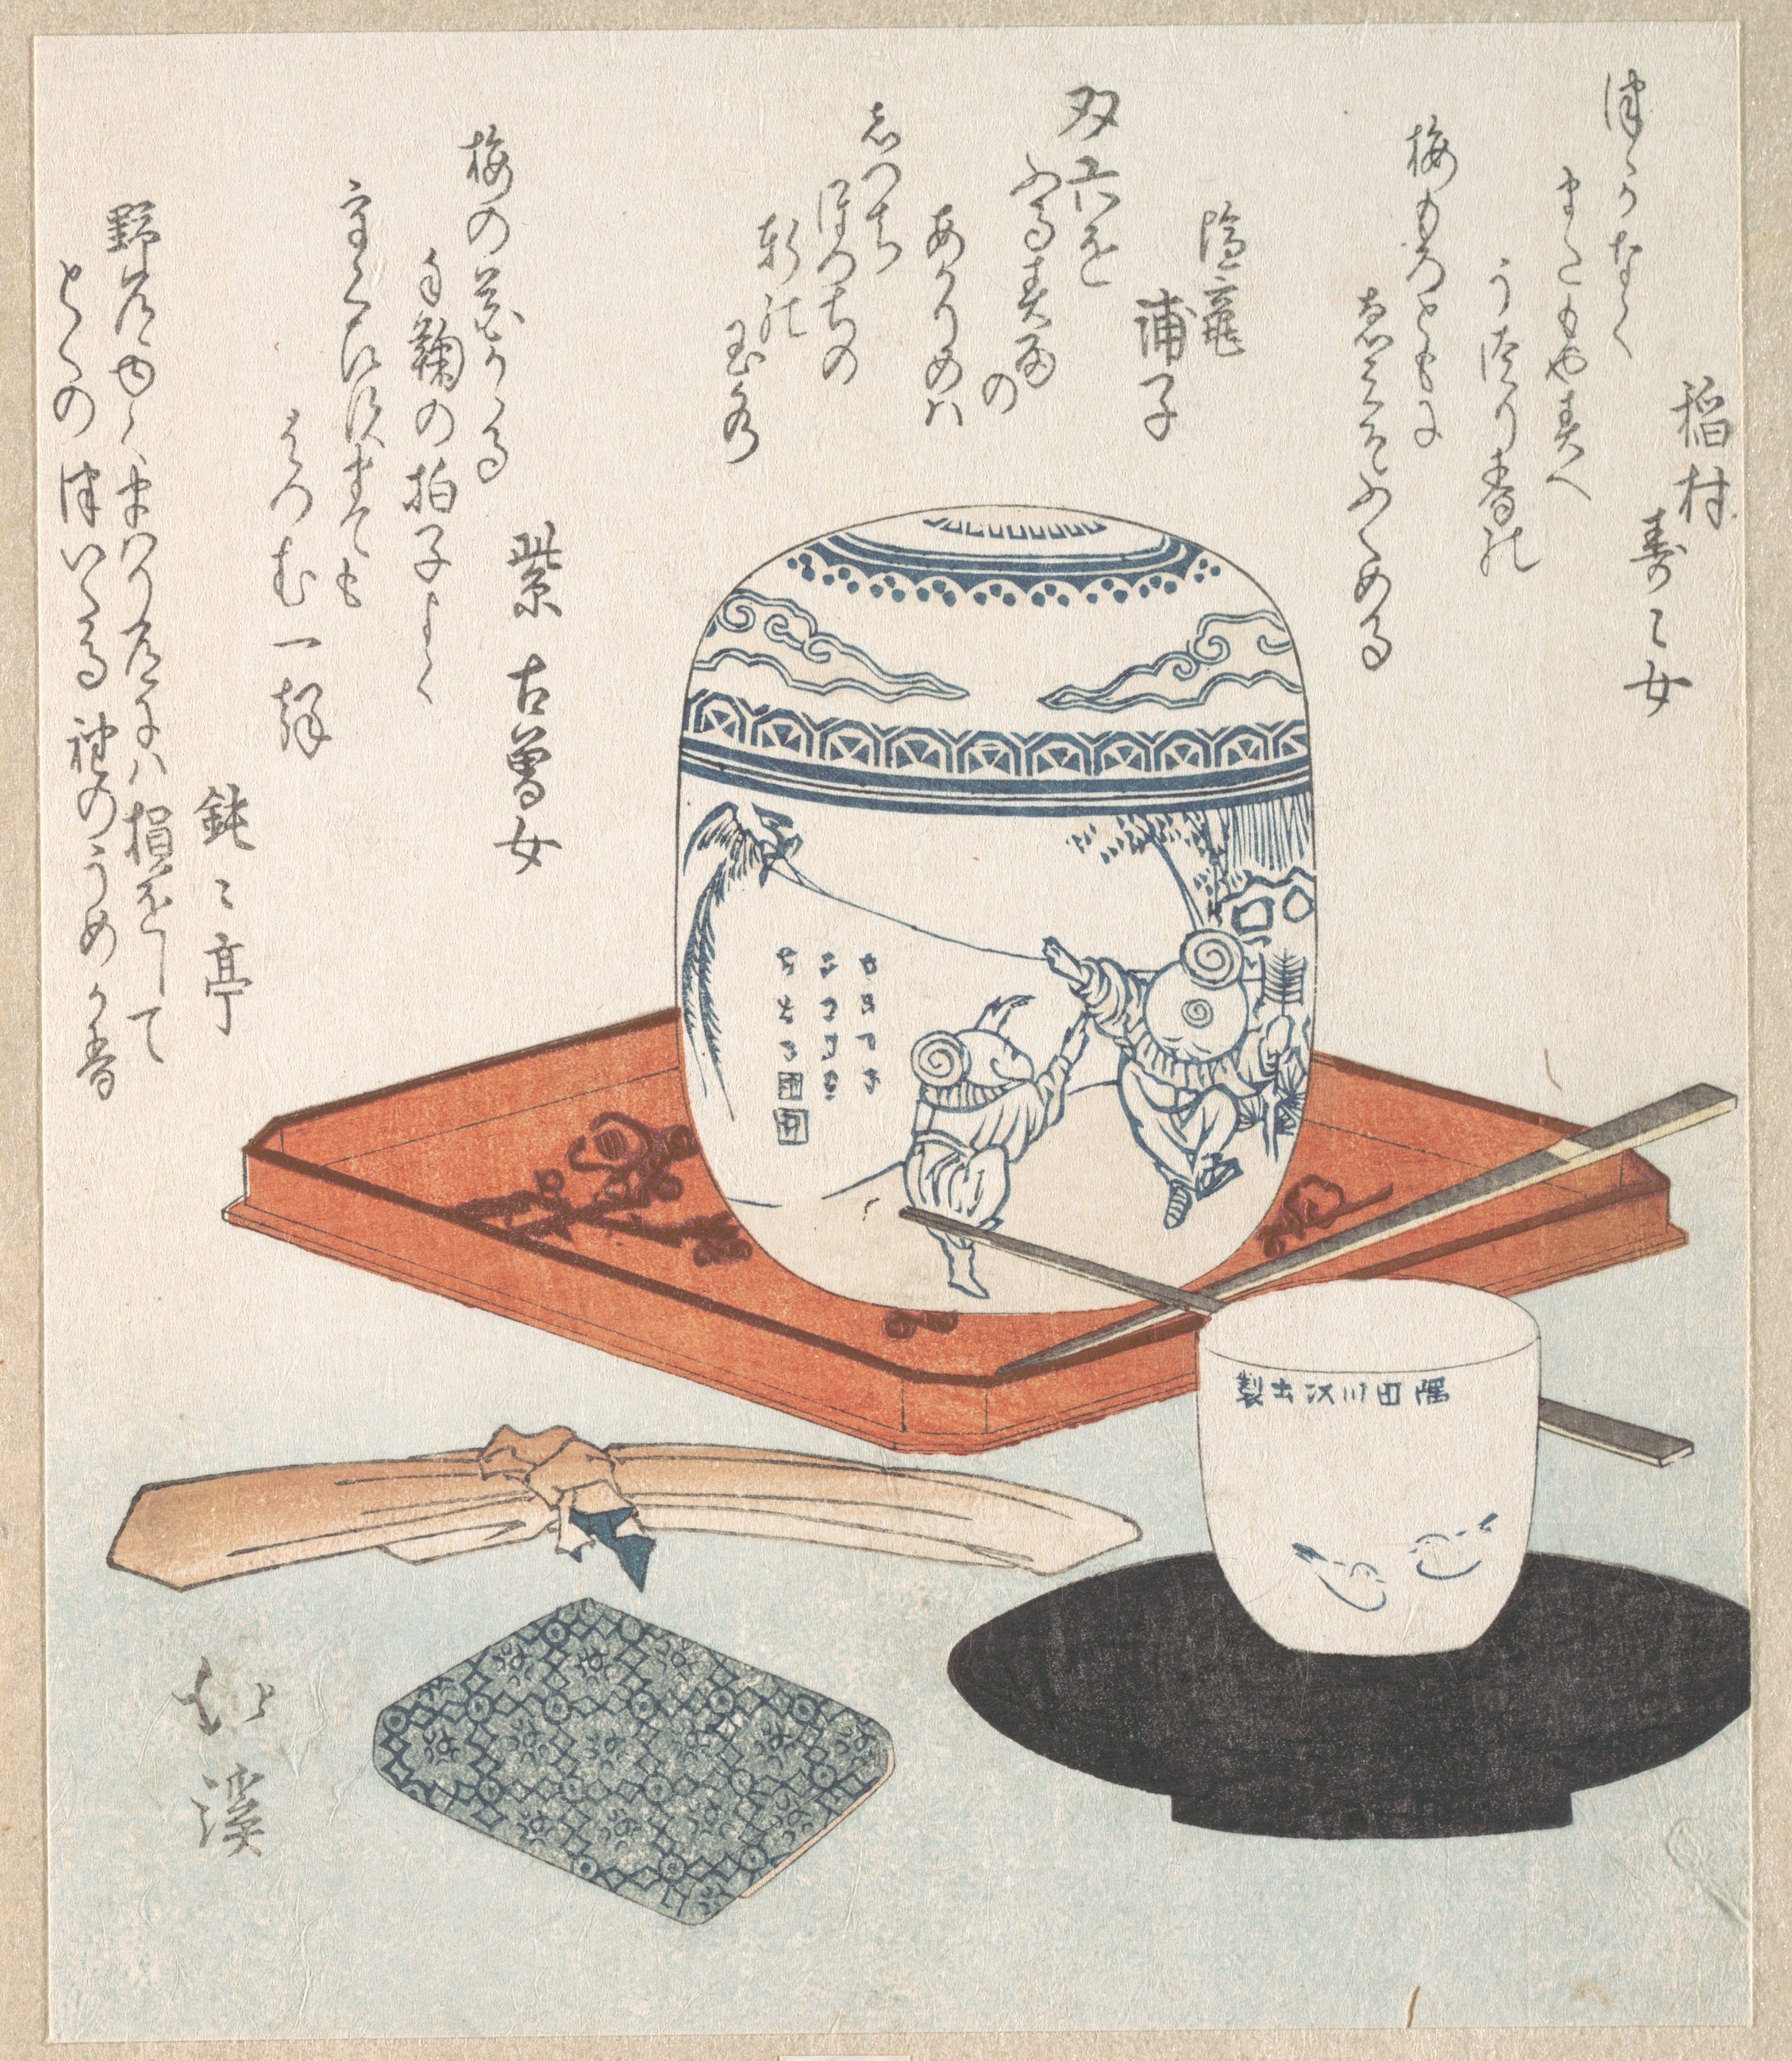 Tea Things by Totoya Hokkei - 19th century - 19.7 x 16.7 cm Metropolitan Museum of Art